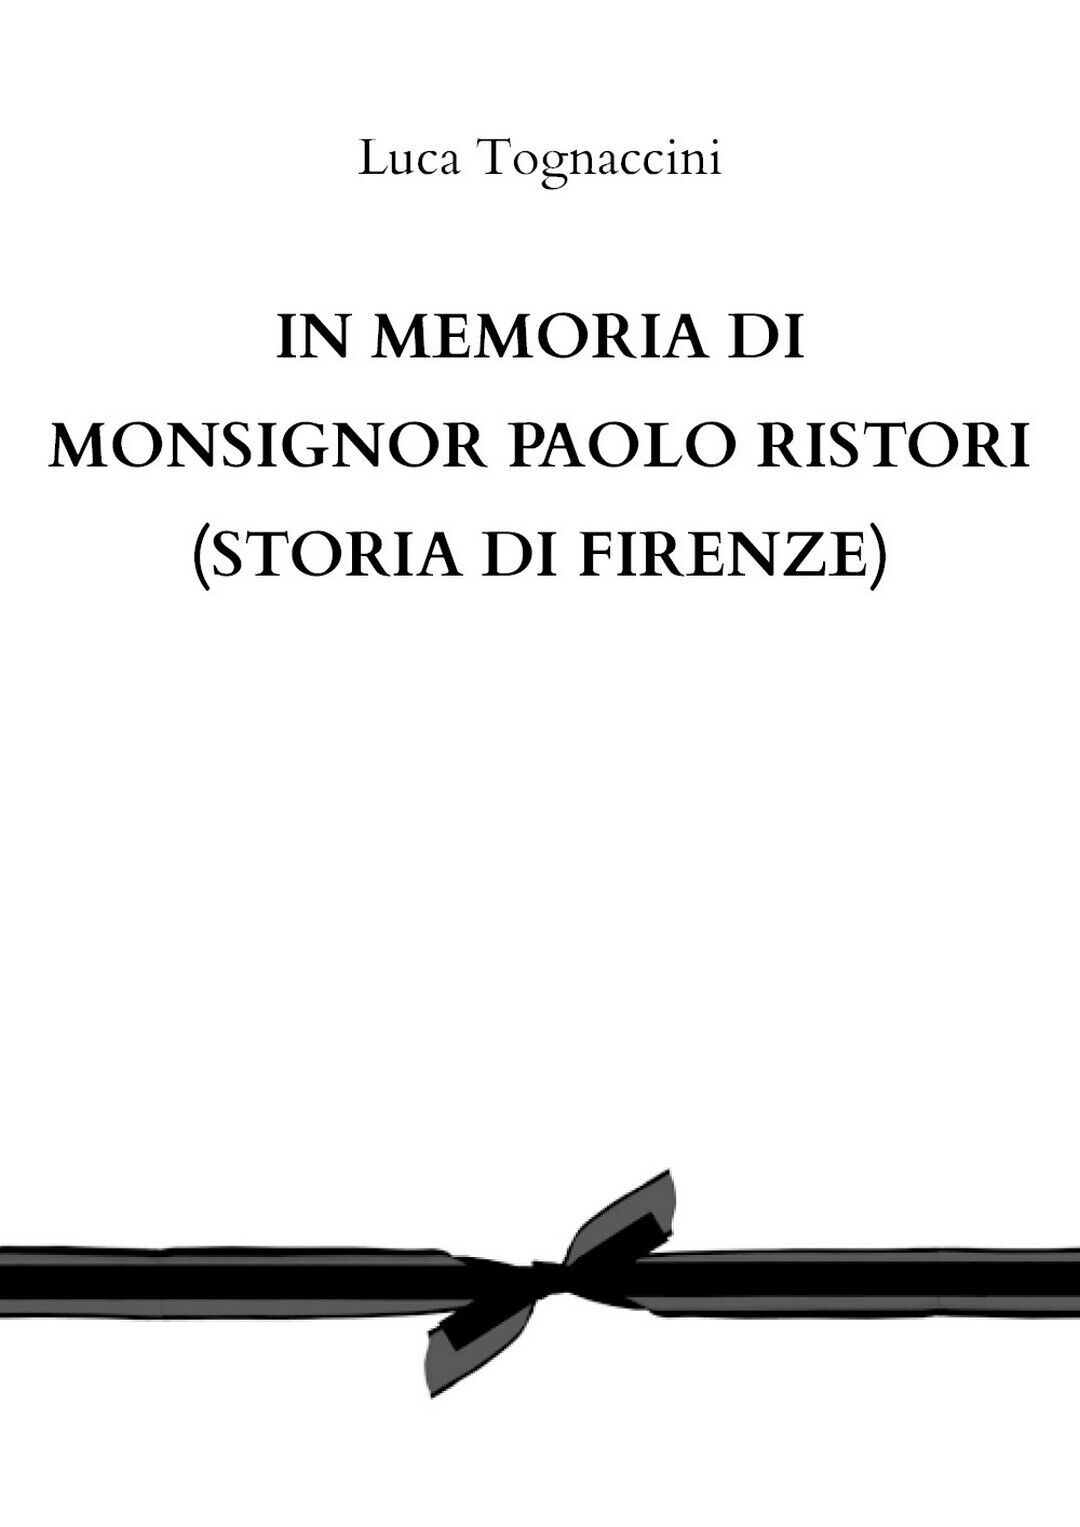 In memoria di Monsignor Paolo Ristori (STORIA DI FIRENZE)  di Luca Tognaccini  libro usato